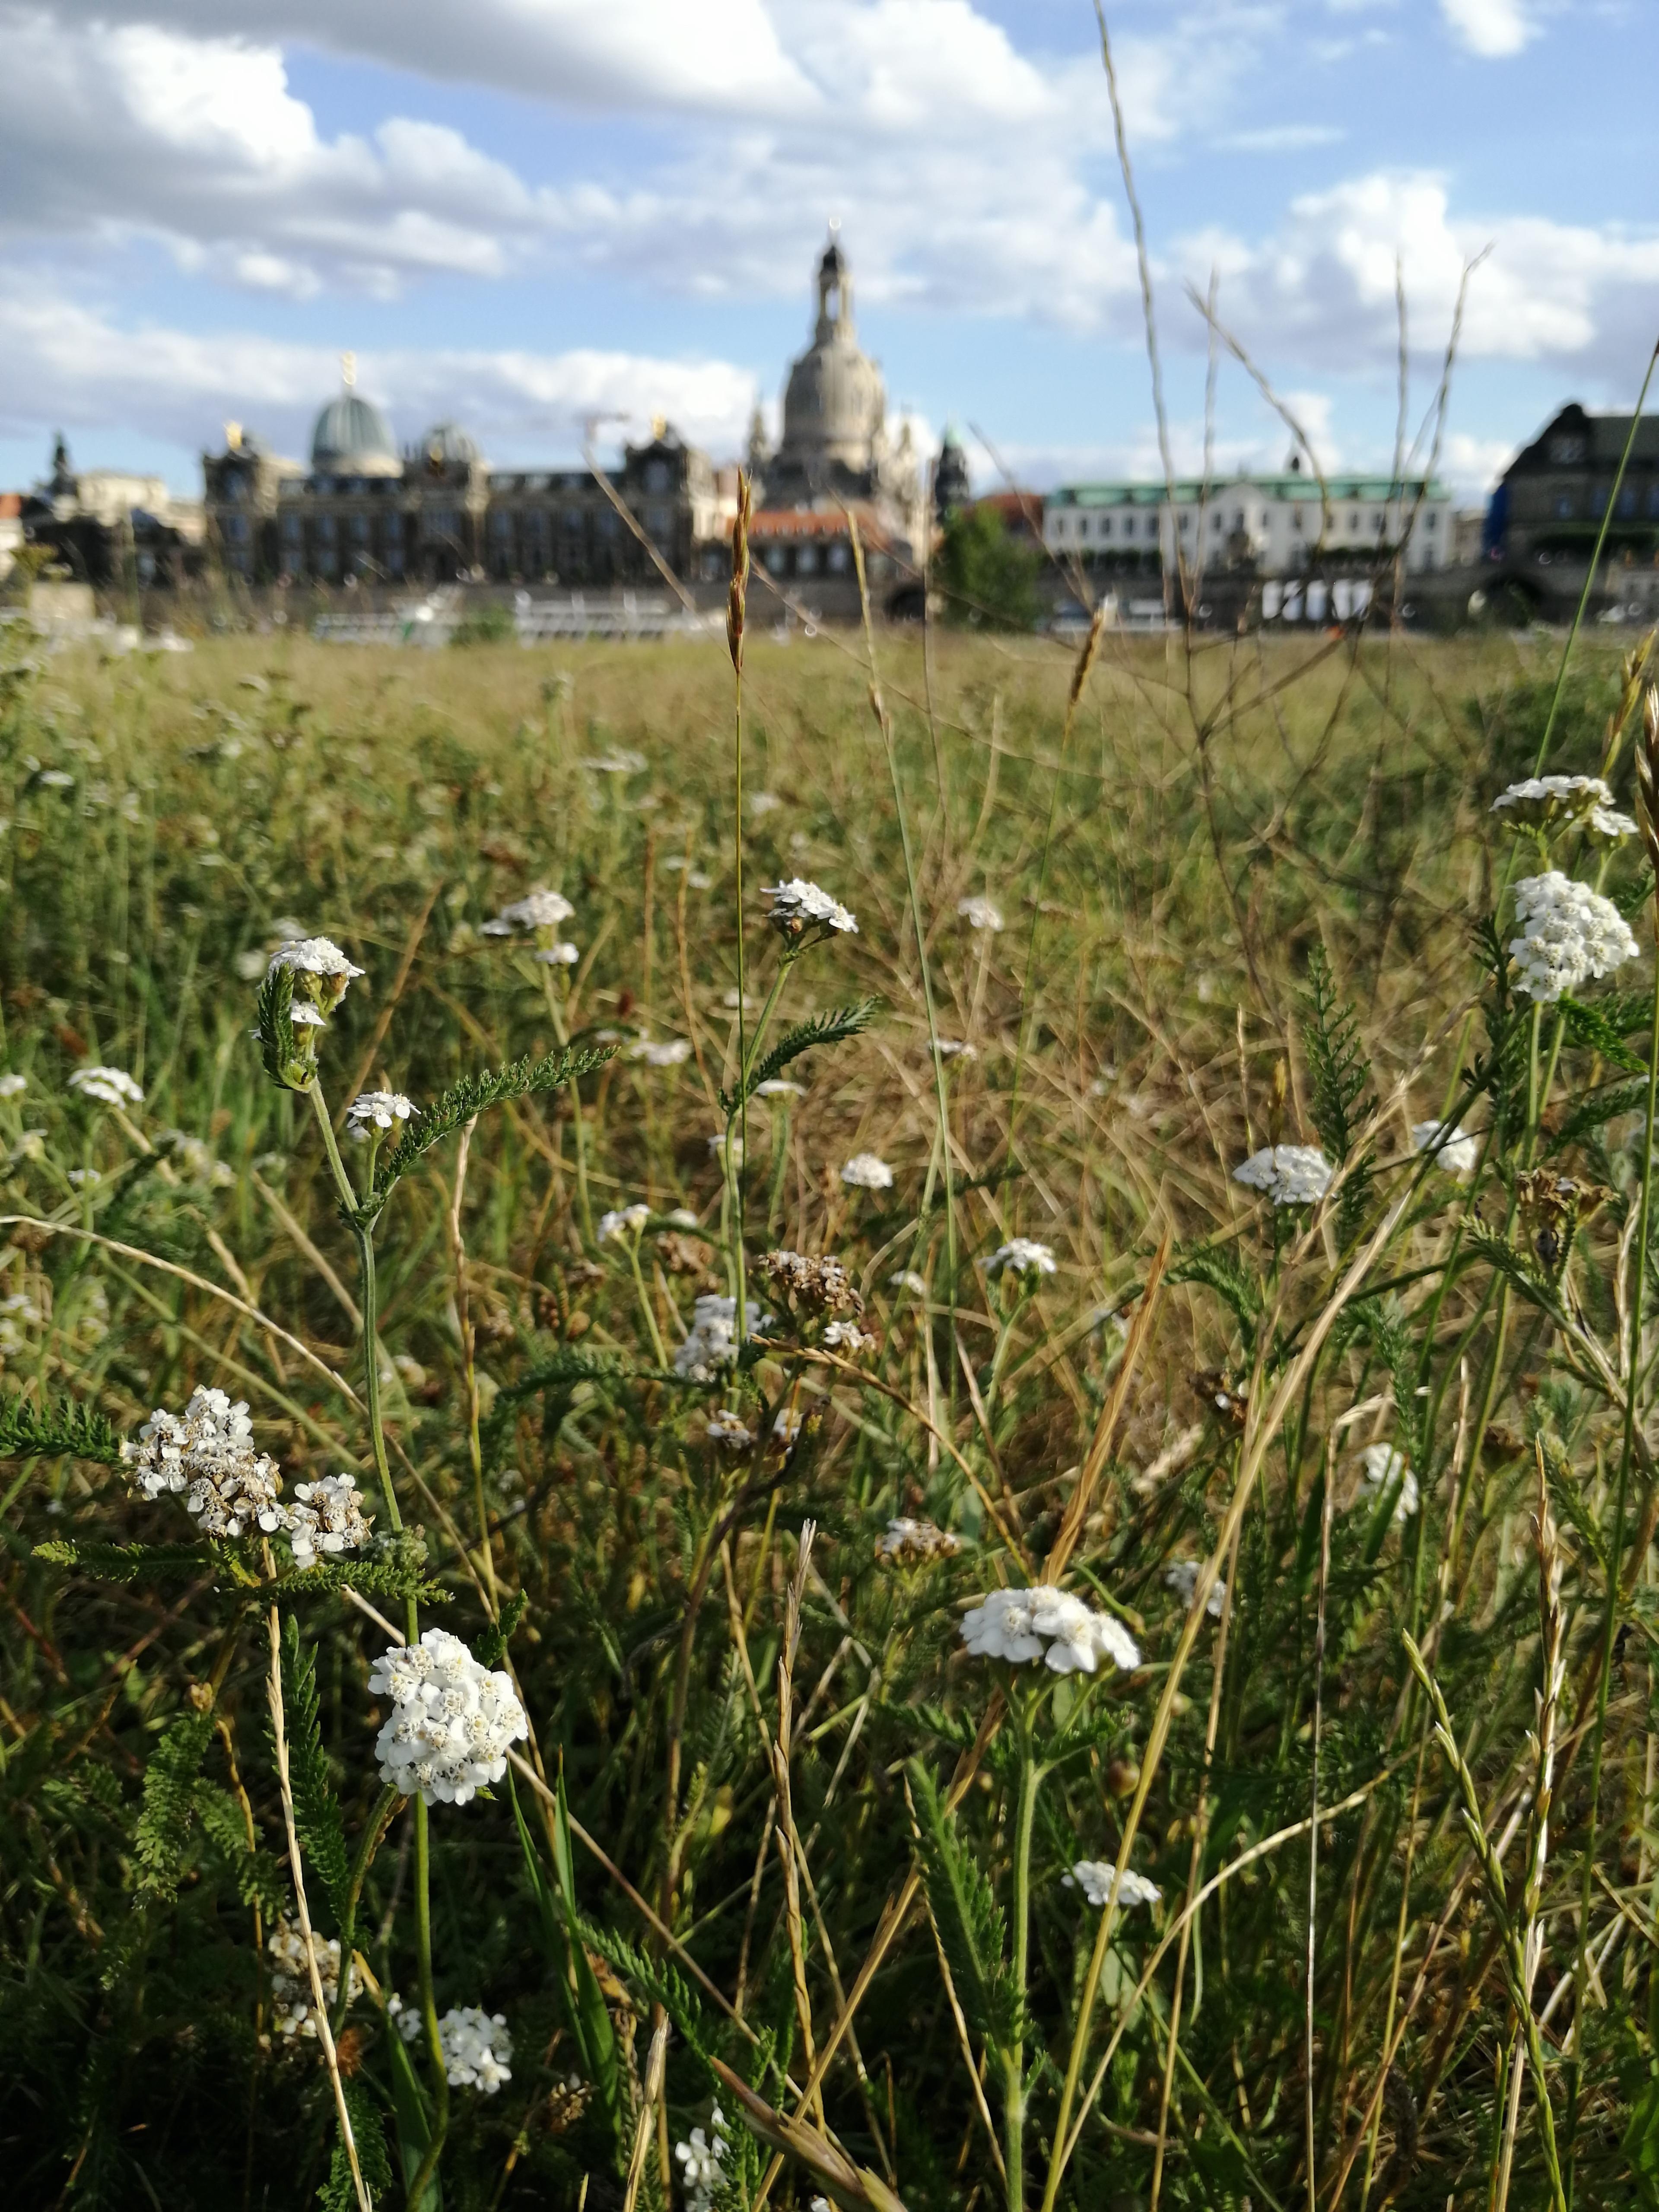 An der Elbe im Gras liegen und das Panorama genießen, das ist #urlaubzuhause. ☀️ #outdoorweek 